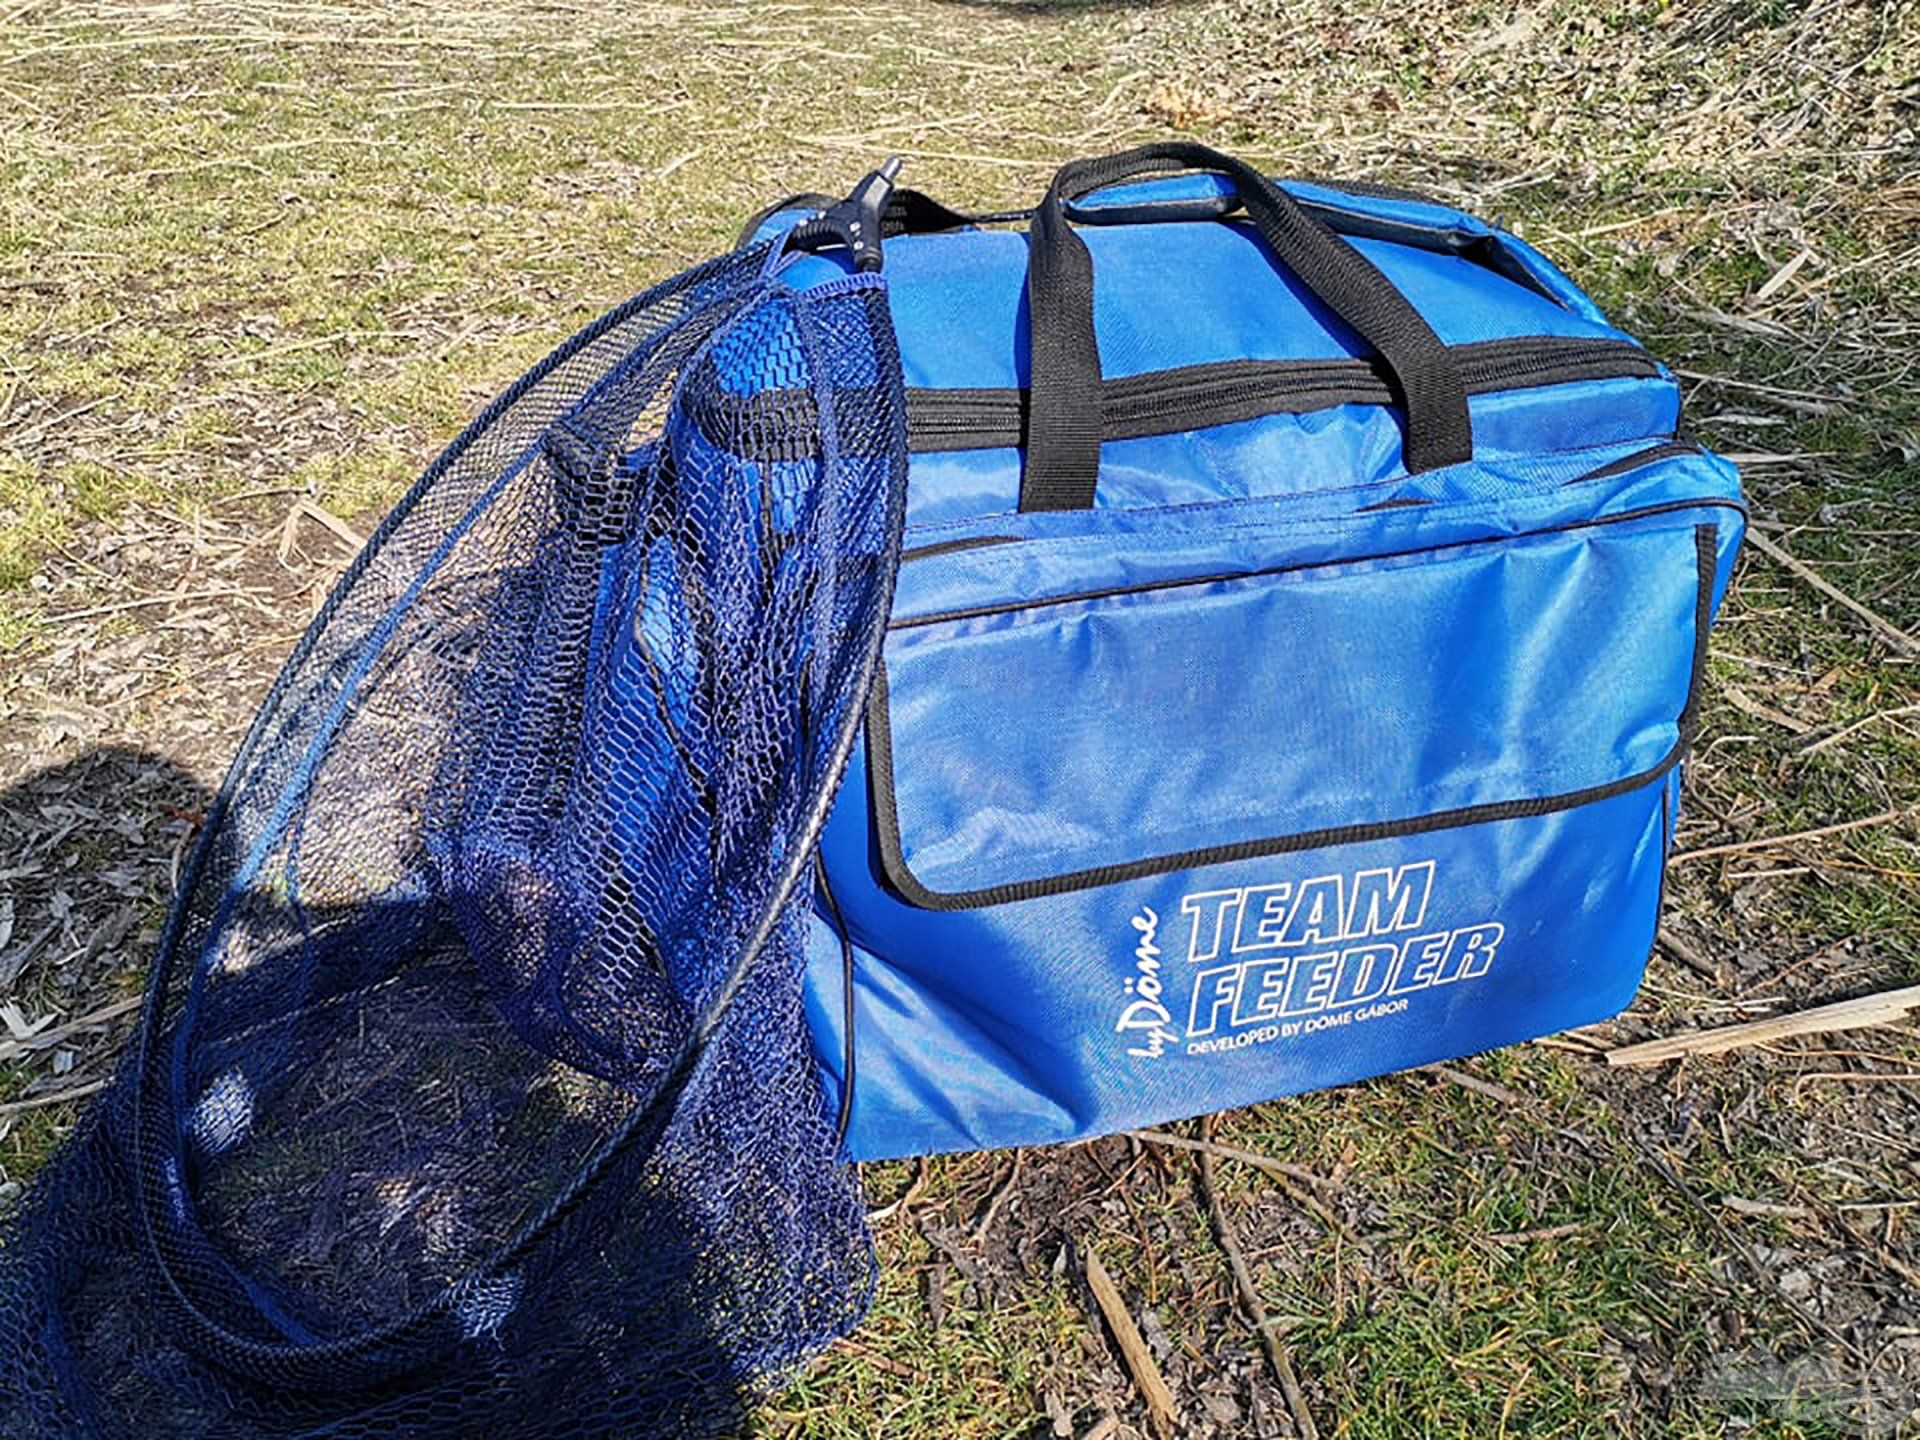 A By Döme TEAM FEEDER nagy szerelékes táska nyújtotta tágas térbe lehet pakolni bőven, csak tudjuk is becipelni a horgászhelyünkre